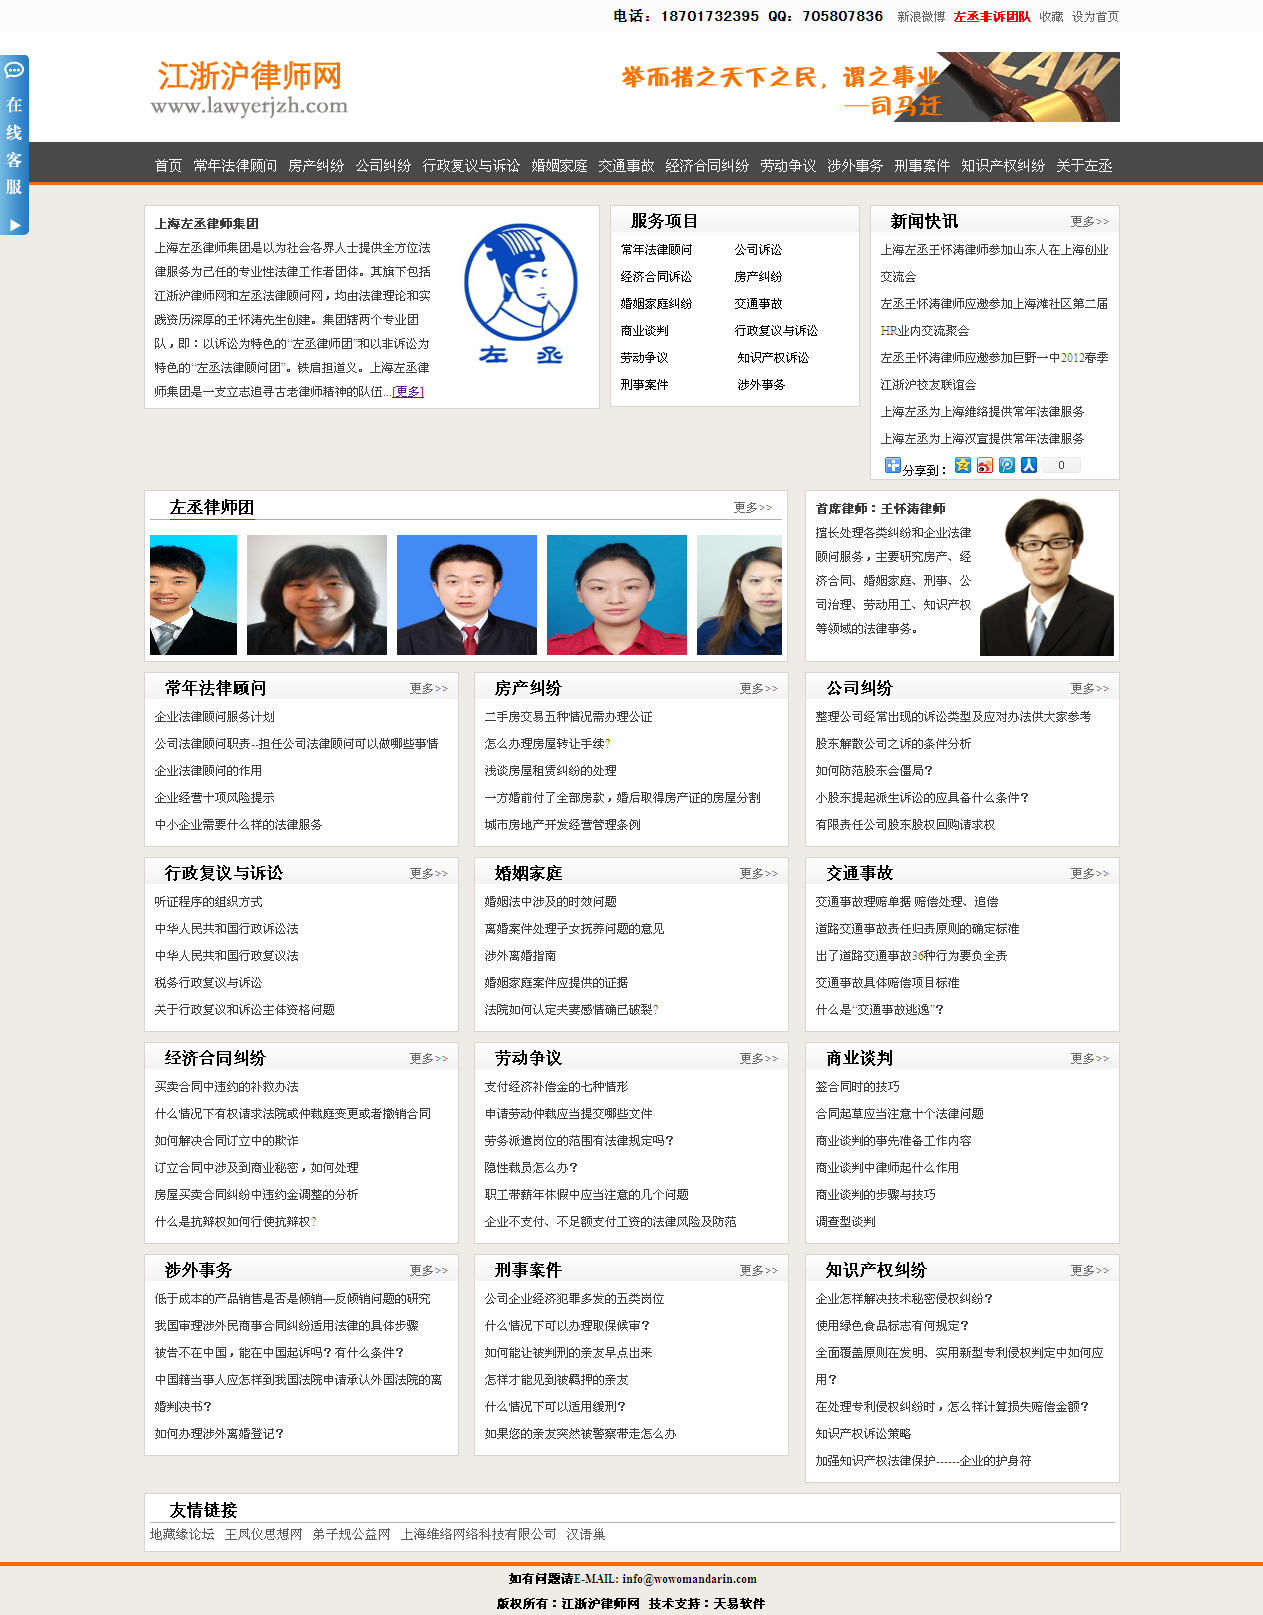 上海左丞律师集团